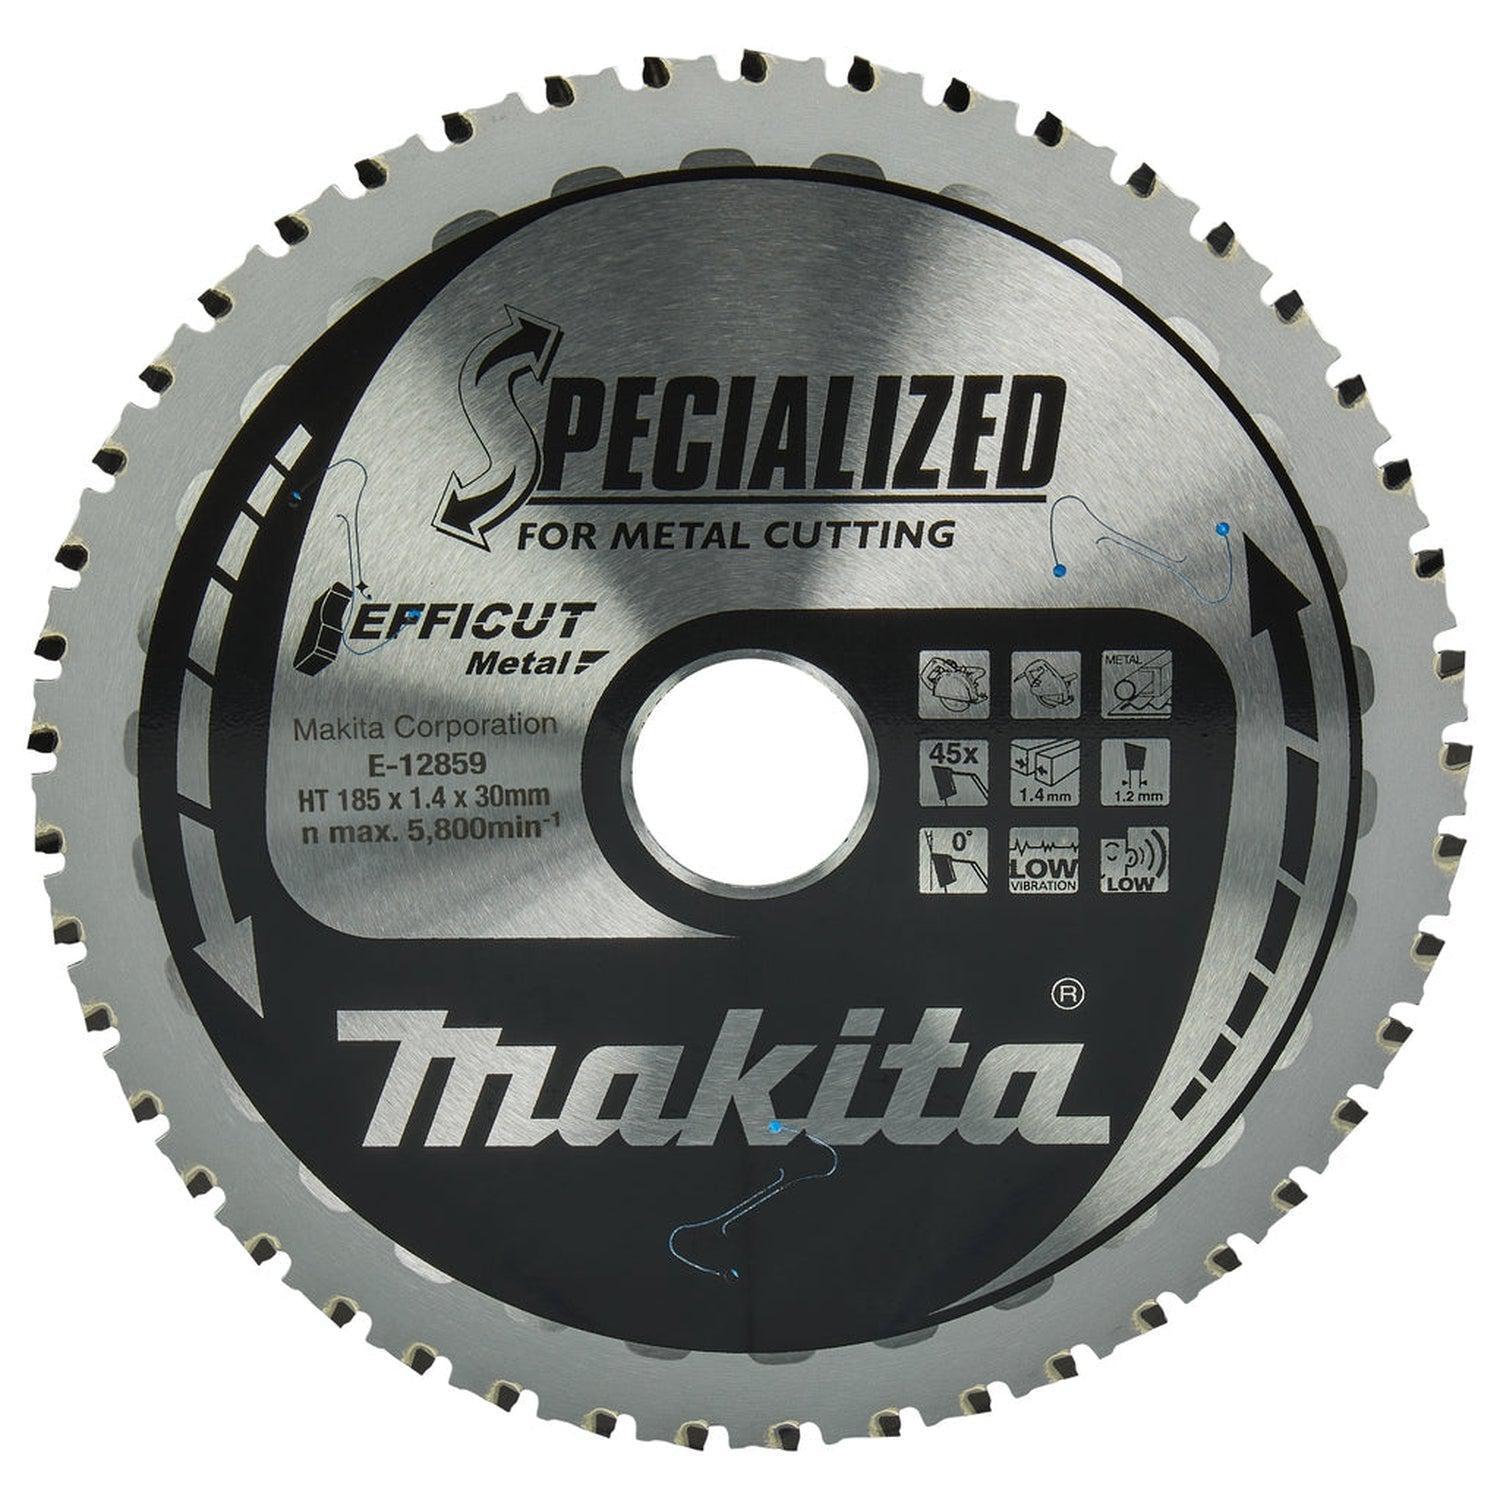 Makita E-12859 Cirkelzaagblad voor Staal | Efficut | Ø 185mm Asgat 30mm 45T